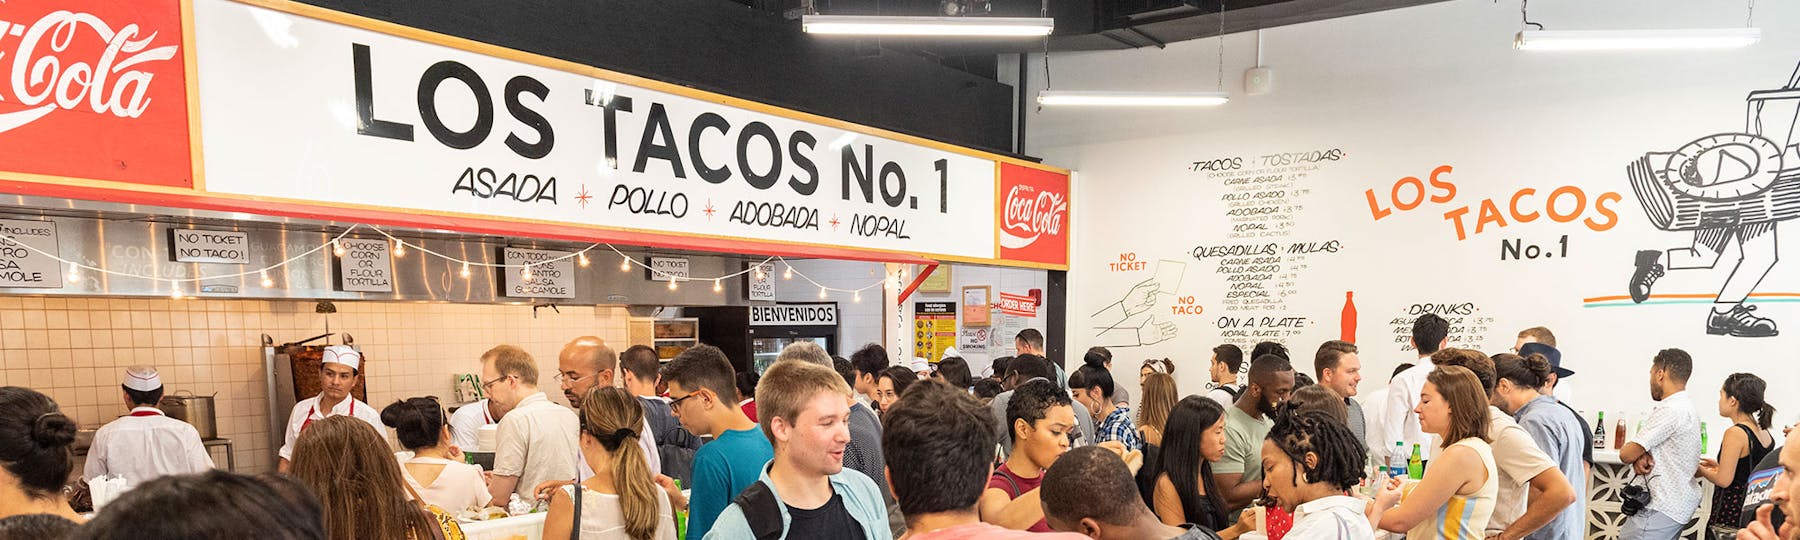 interior shot of Los Tacos No. 1